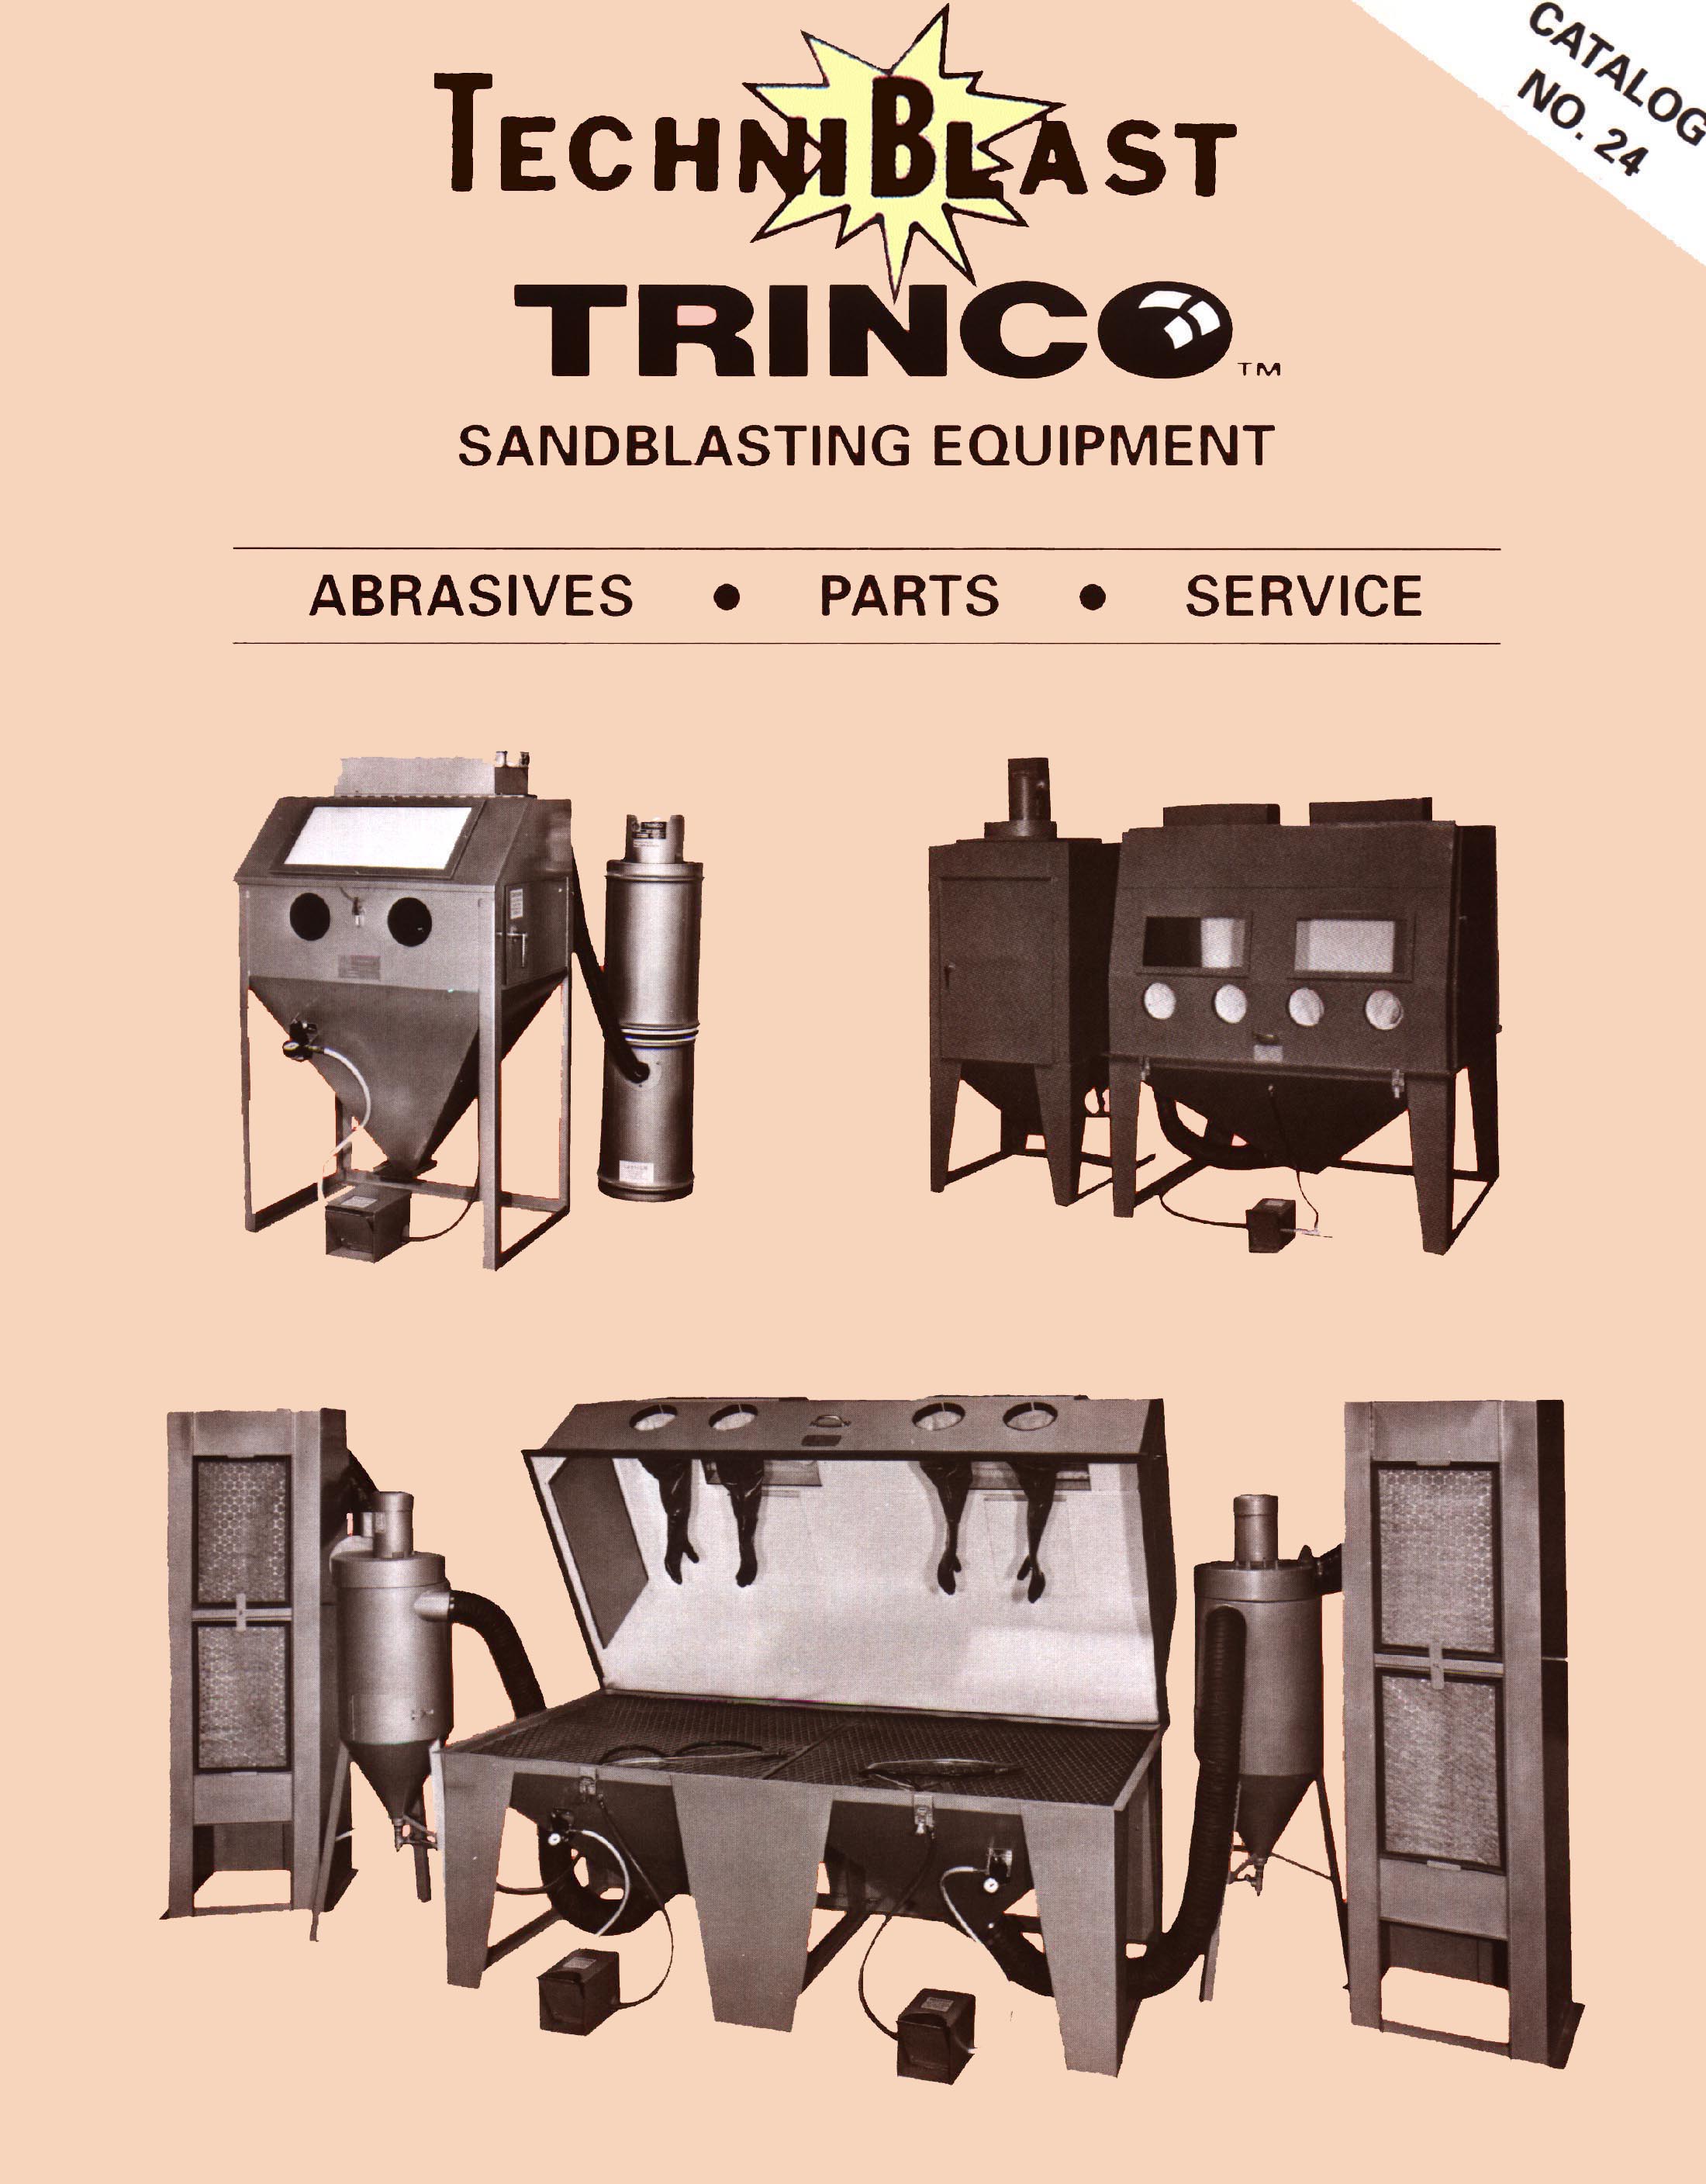 Trinco Air Blast Equipment